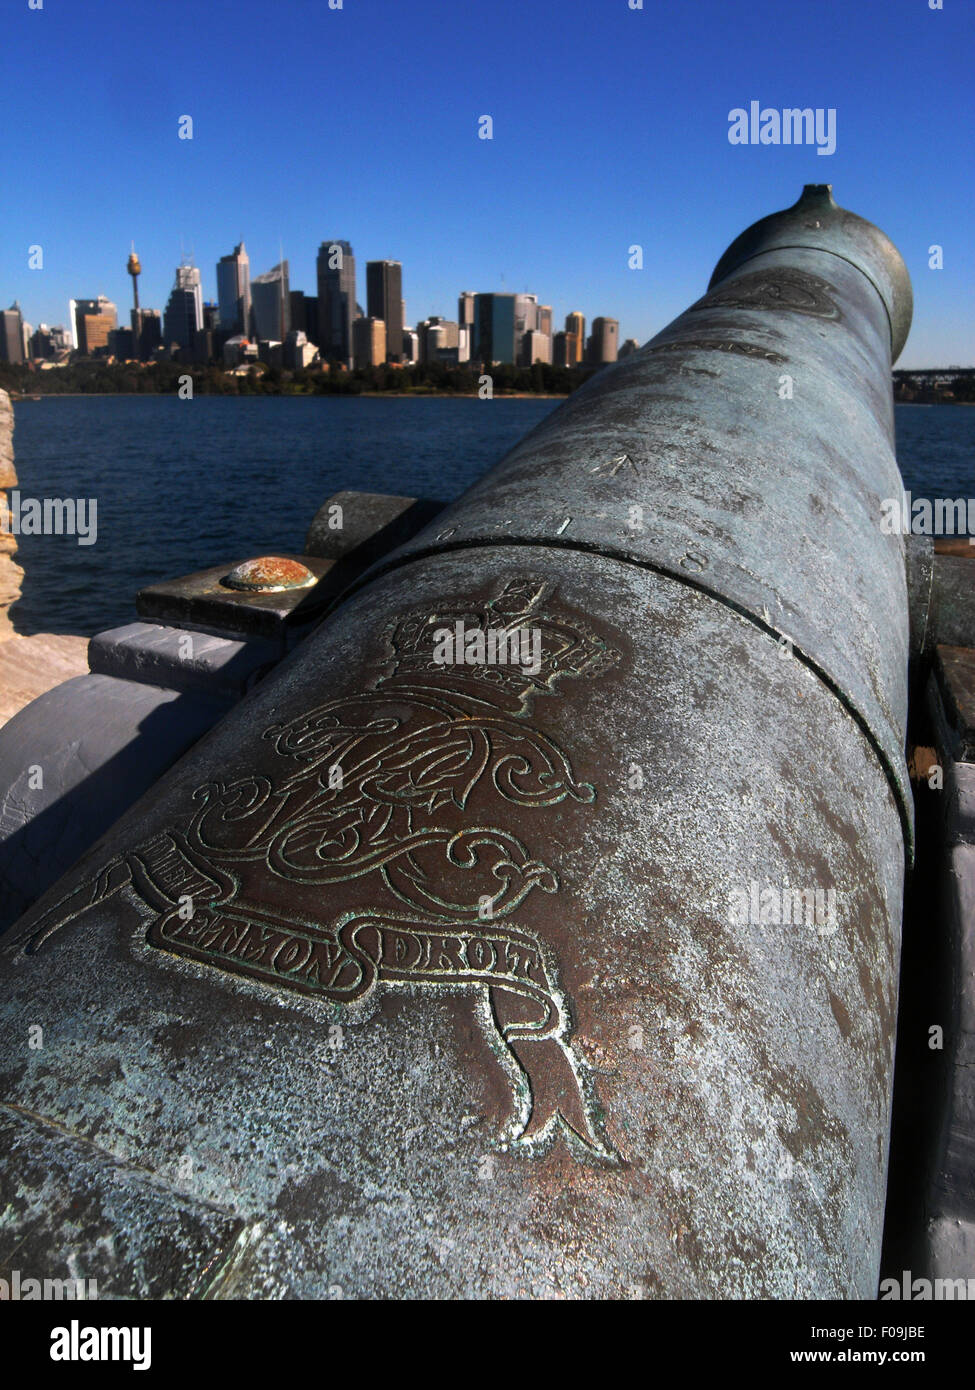 Las insignias reales en relieve cañón histórico con vistas del puerto de Sydney y el CDB, Fort Denison (Pinchgut Island), NSW, Australia. Foto de stock